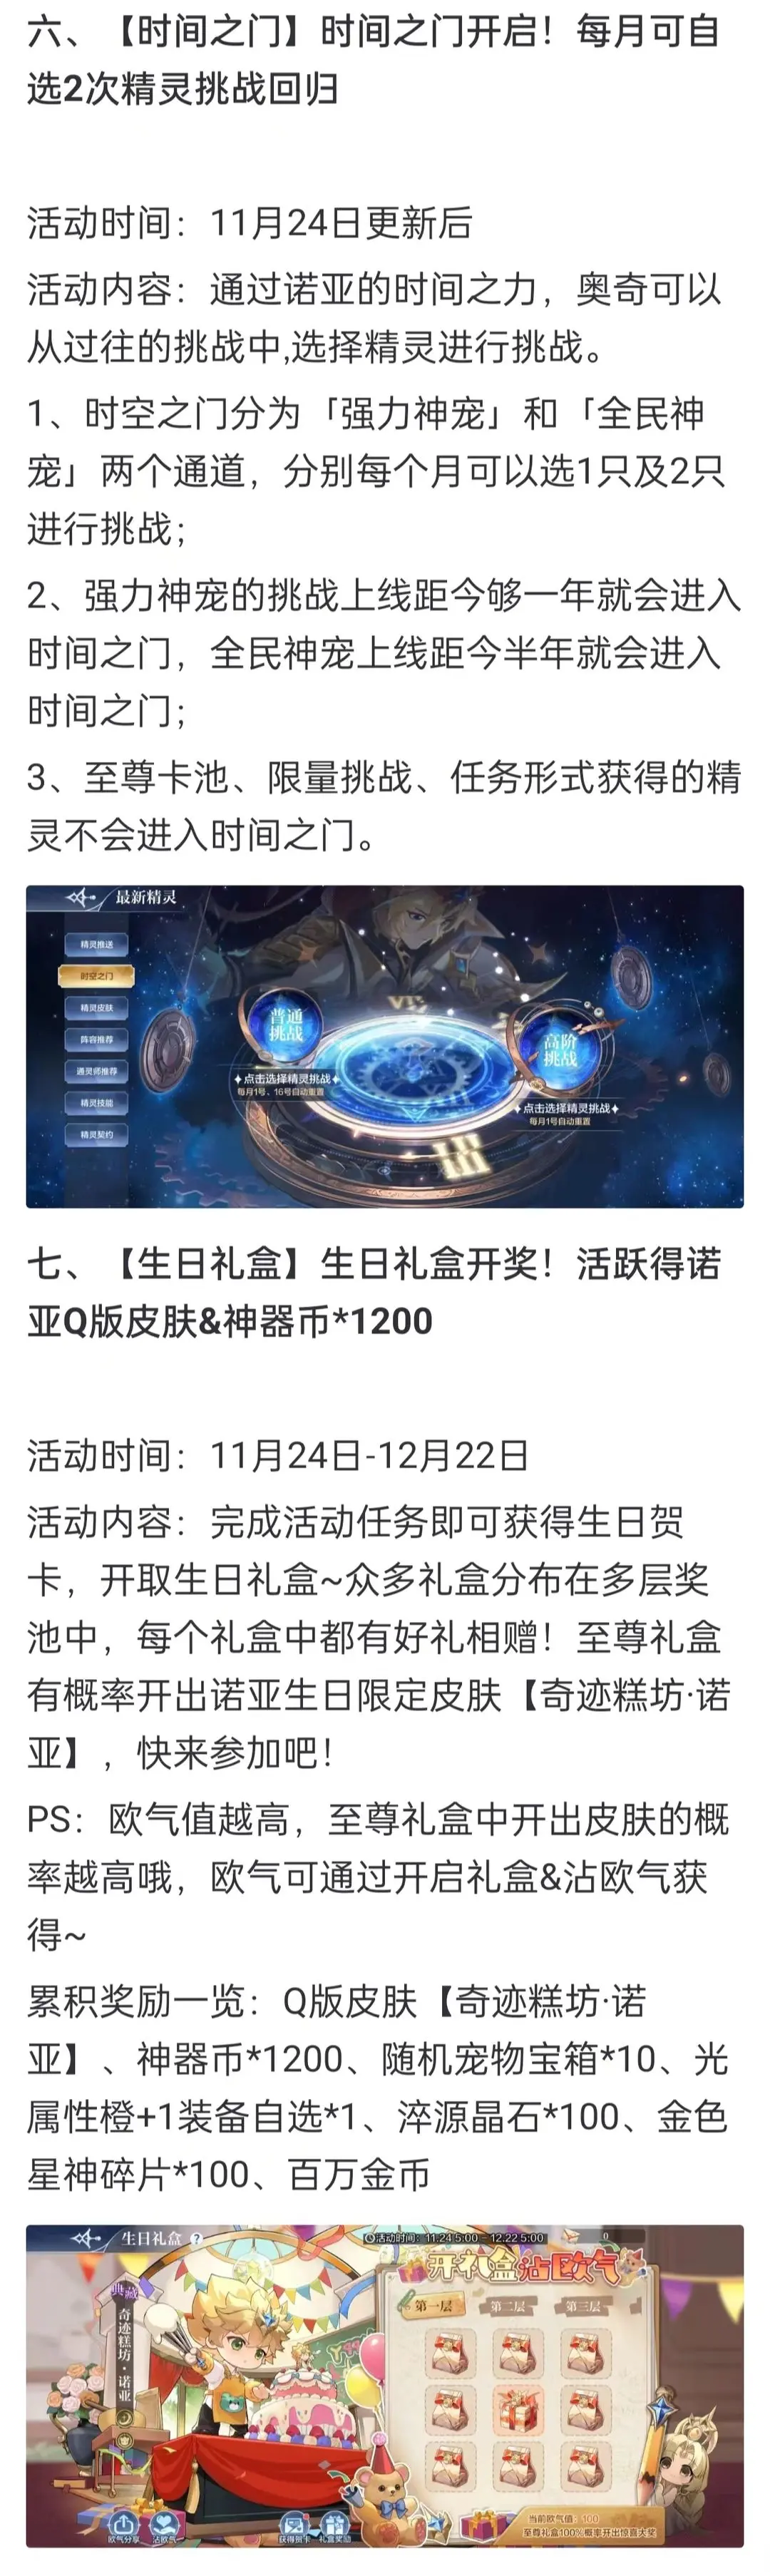 奥奇传说手游更新公告11月24日 奥奇传说手游小诺生日会开启图5